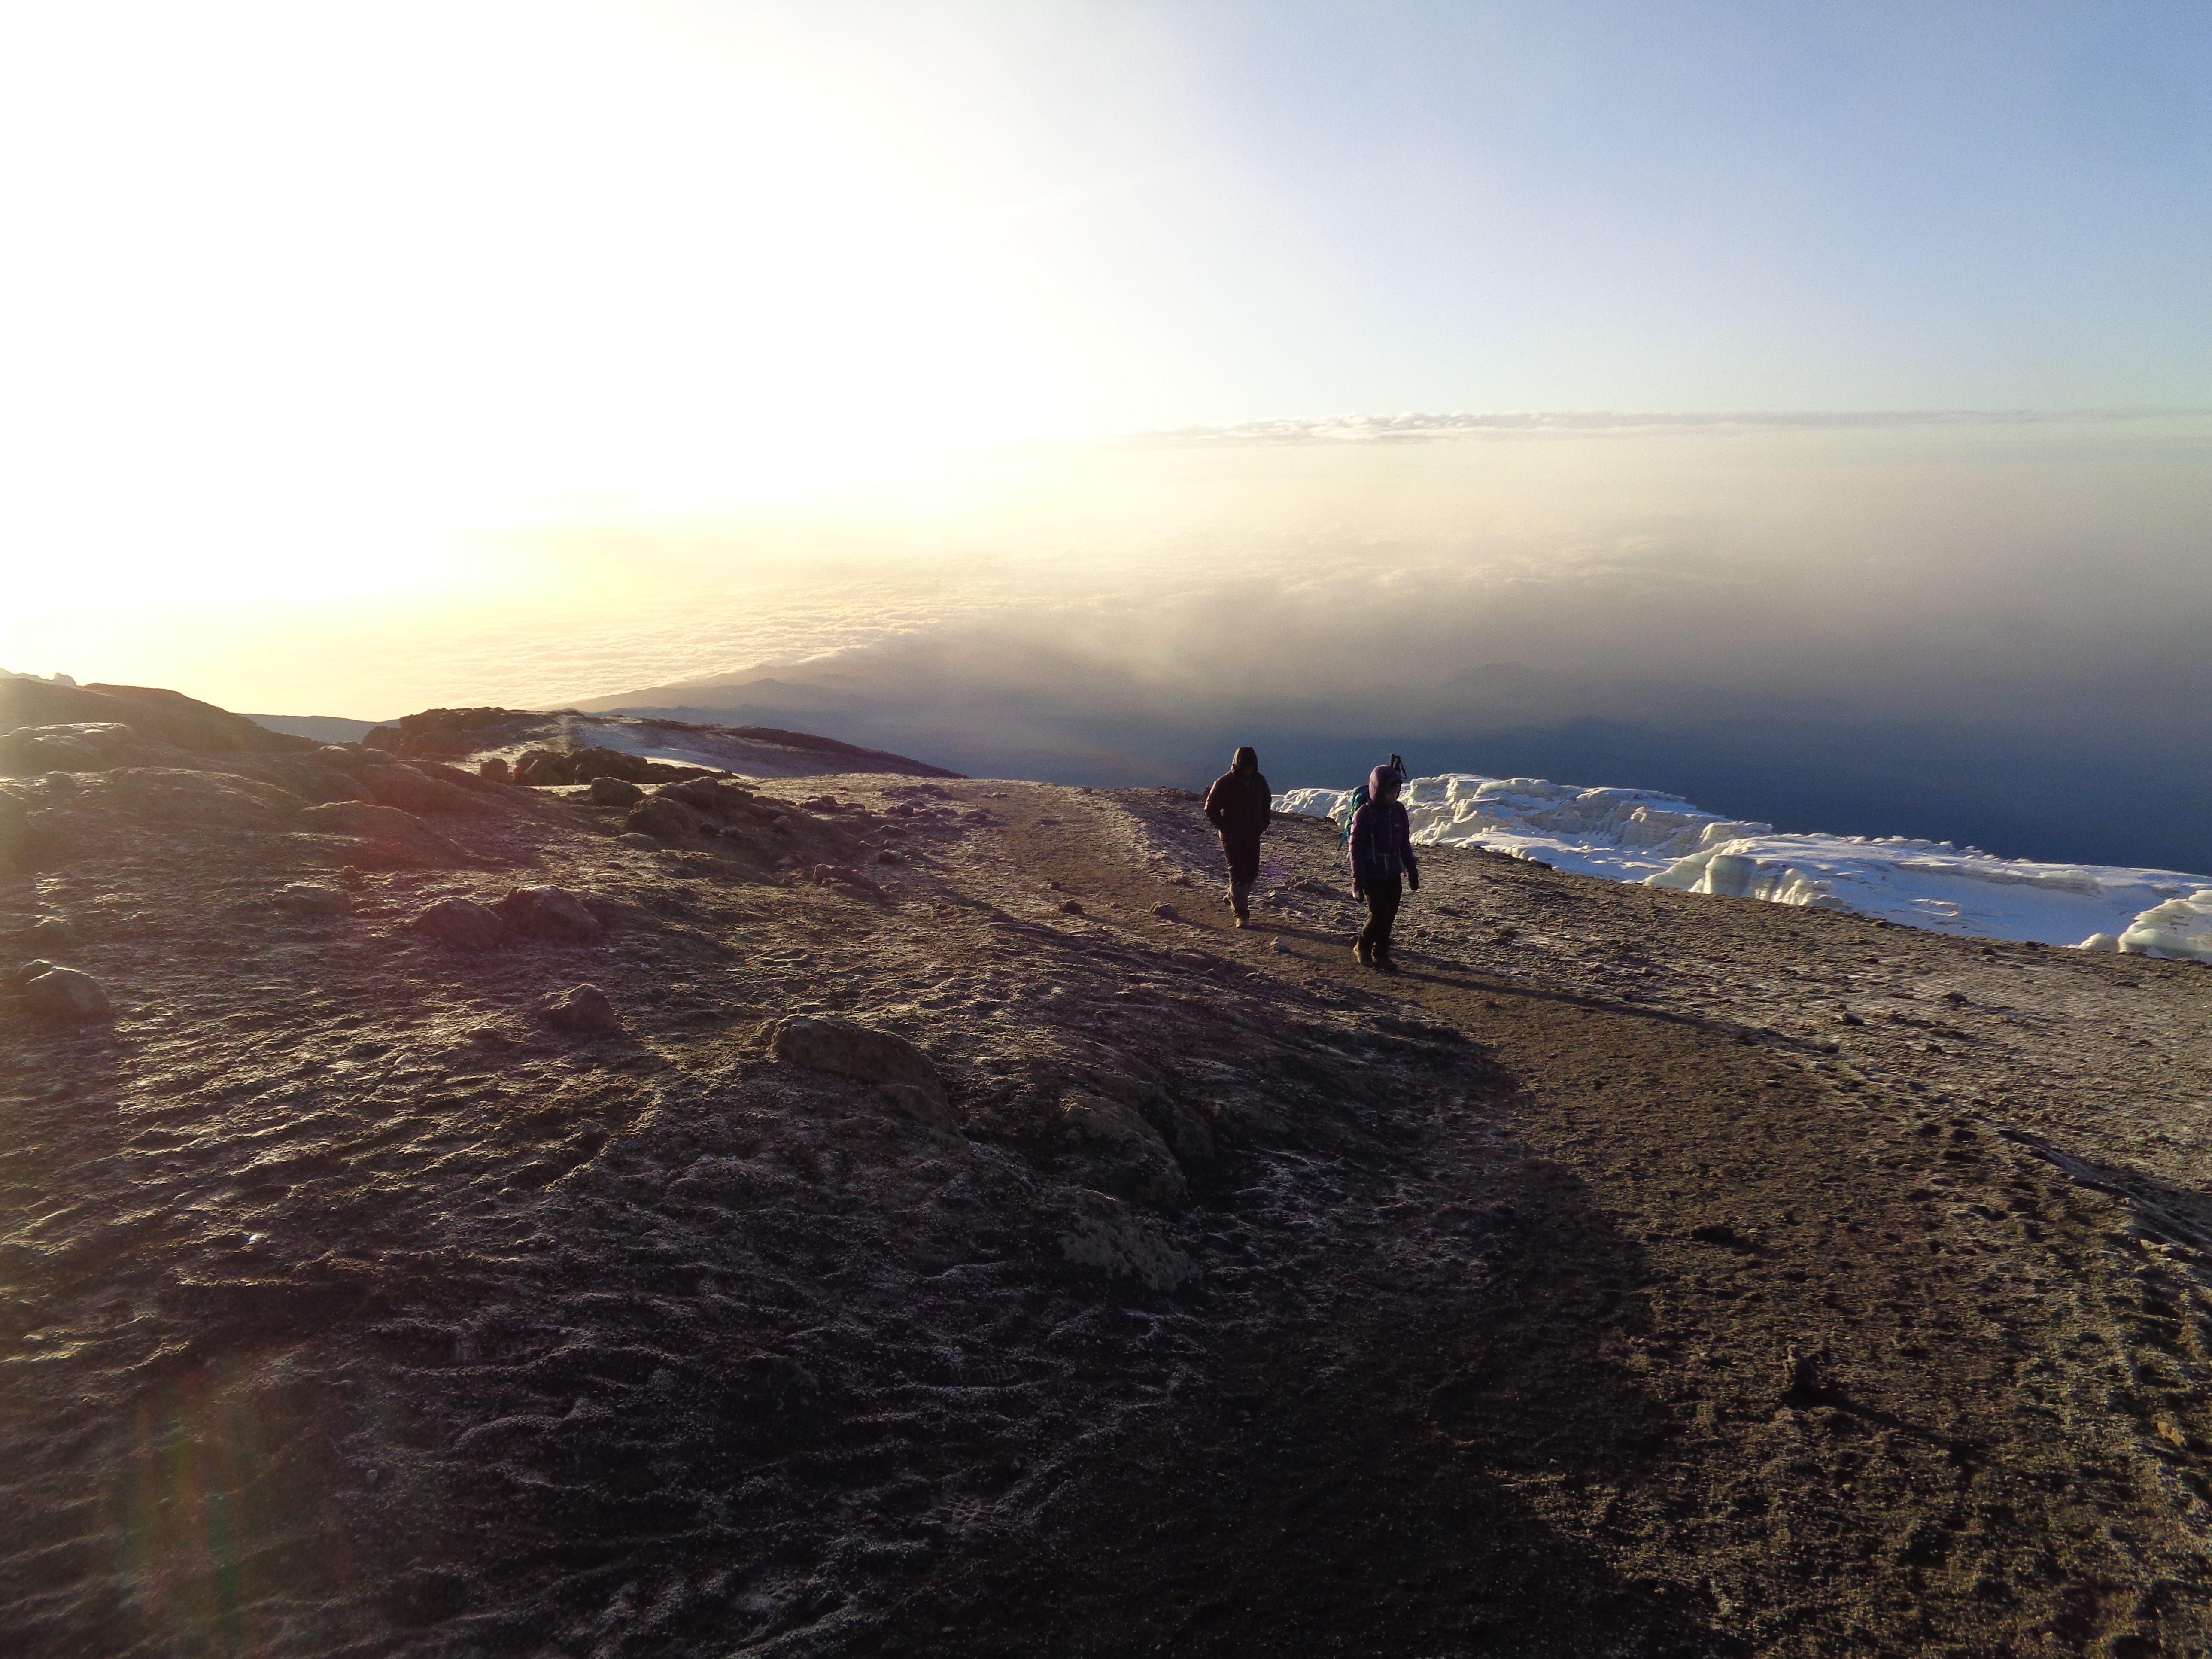 Climbing high on Mount Kilimanjaro